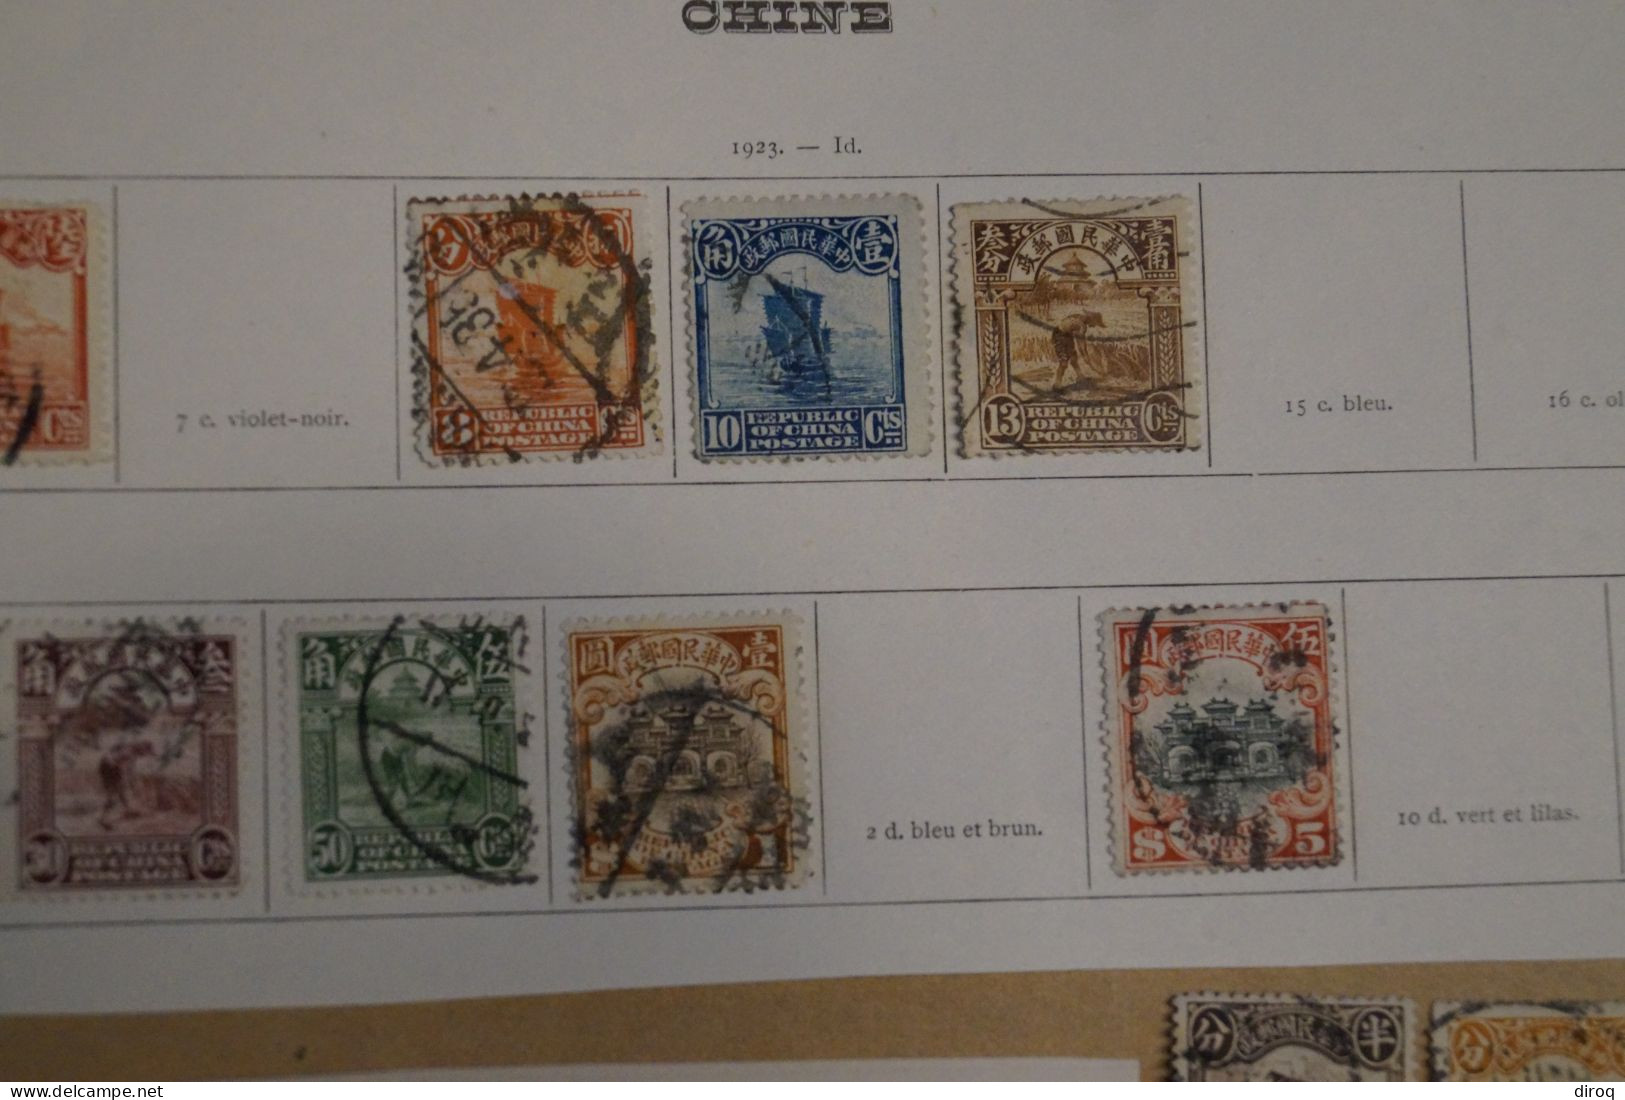 Chine,Chines,lot De 48 Timbres Oblitérés,1913 - 1923,certains Avec Surcharges, Pour Collection,collector - 1912-1949 République